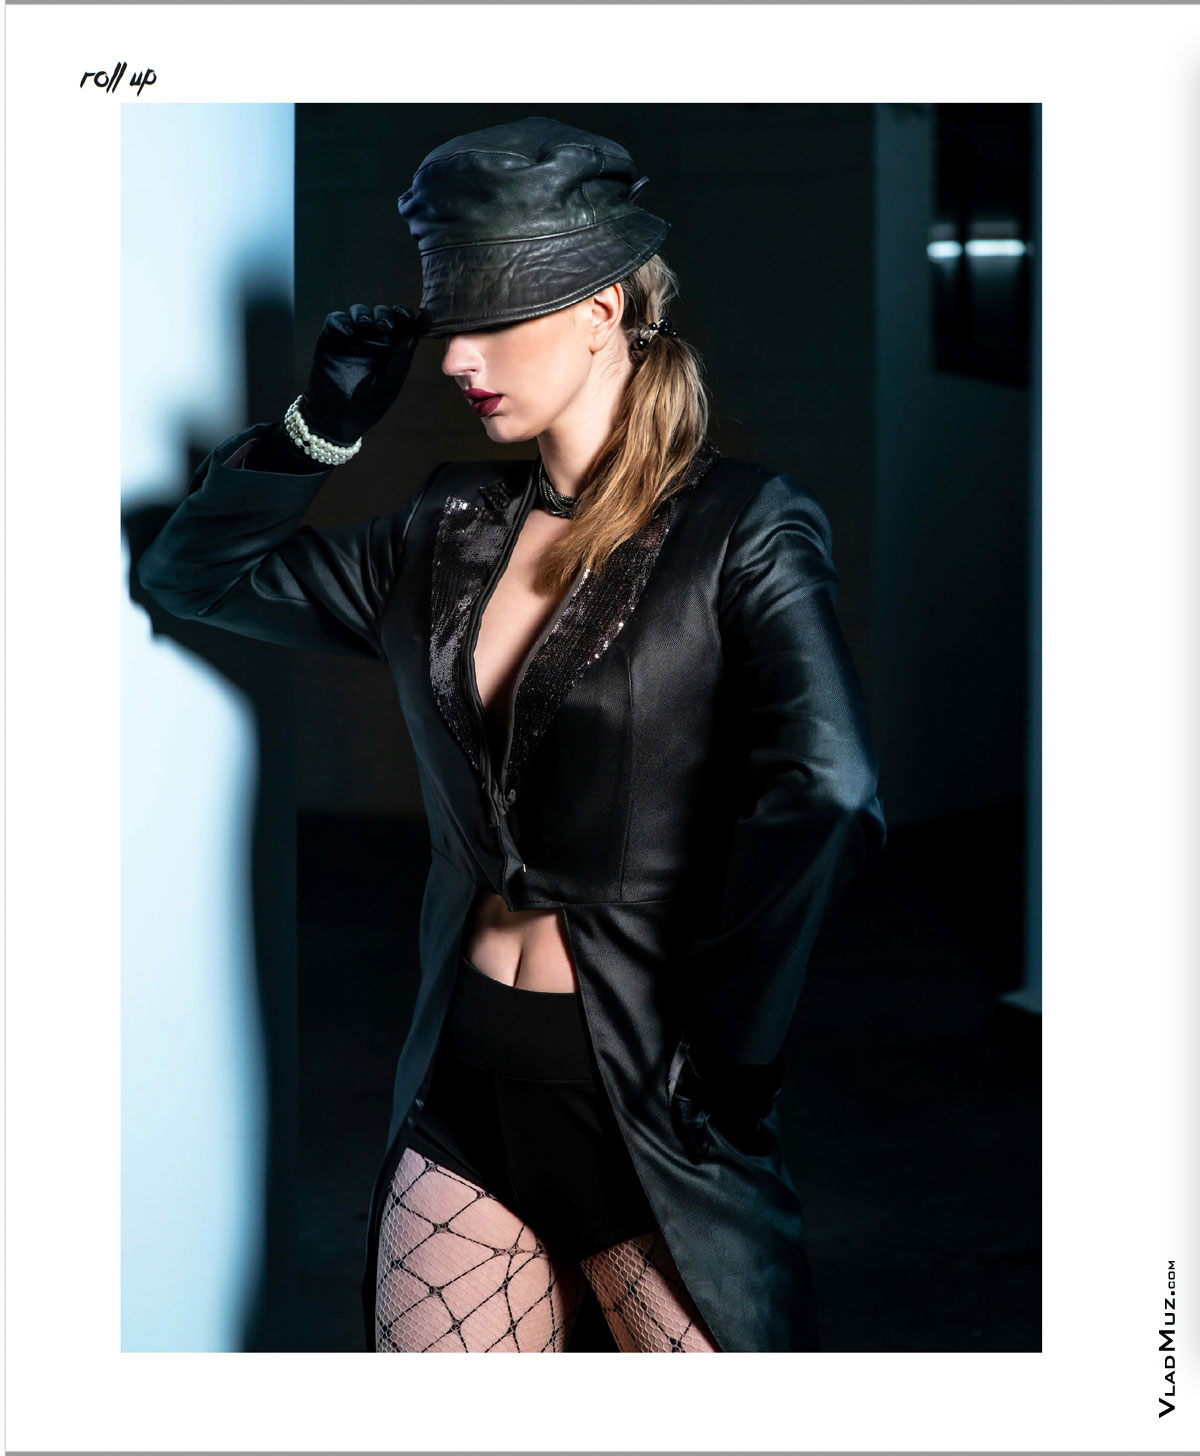 Фото девушки-модели в кожаной шляпке и жакете из серии модных фотографий для журнала Roll Up Magazine